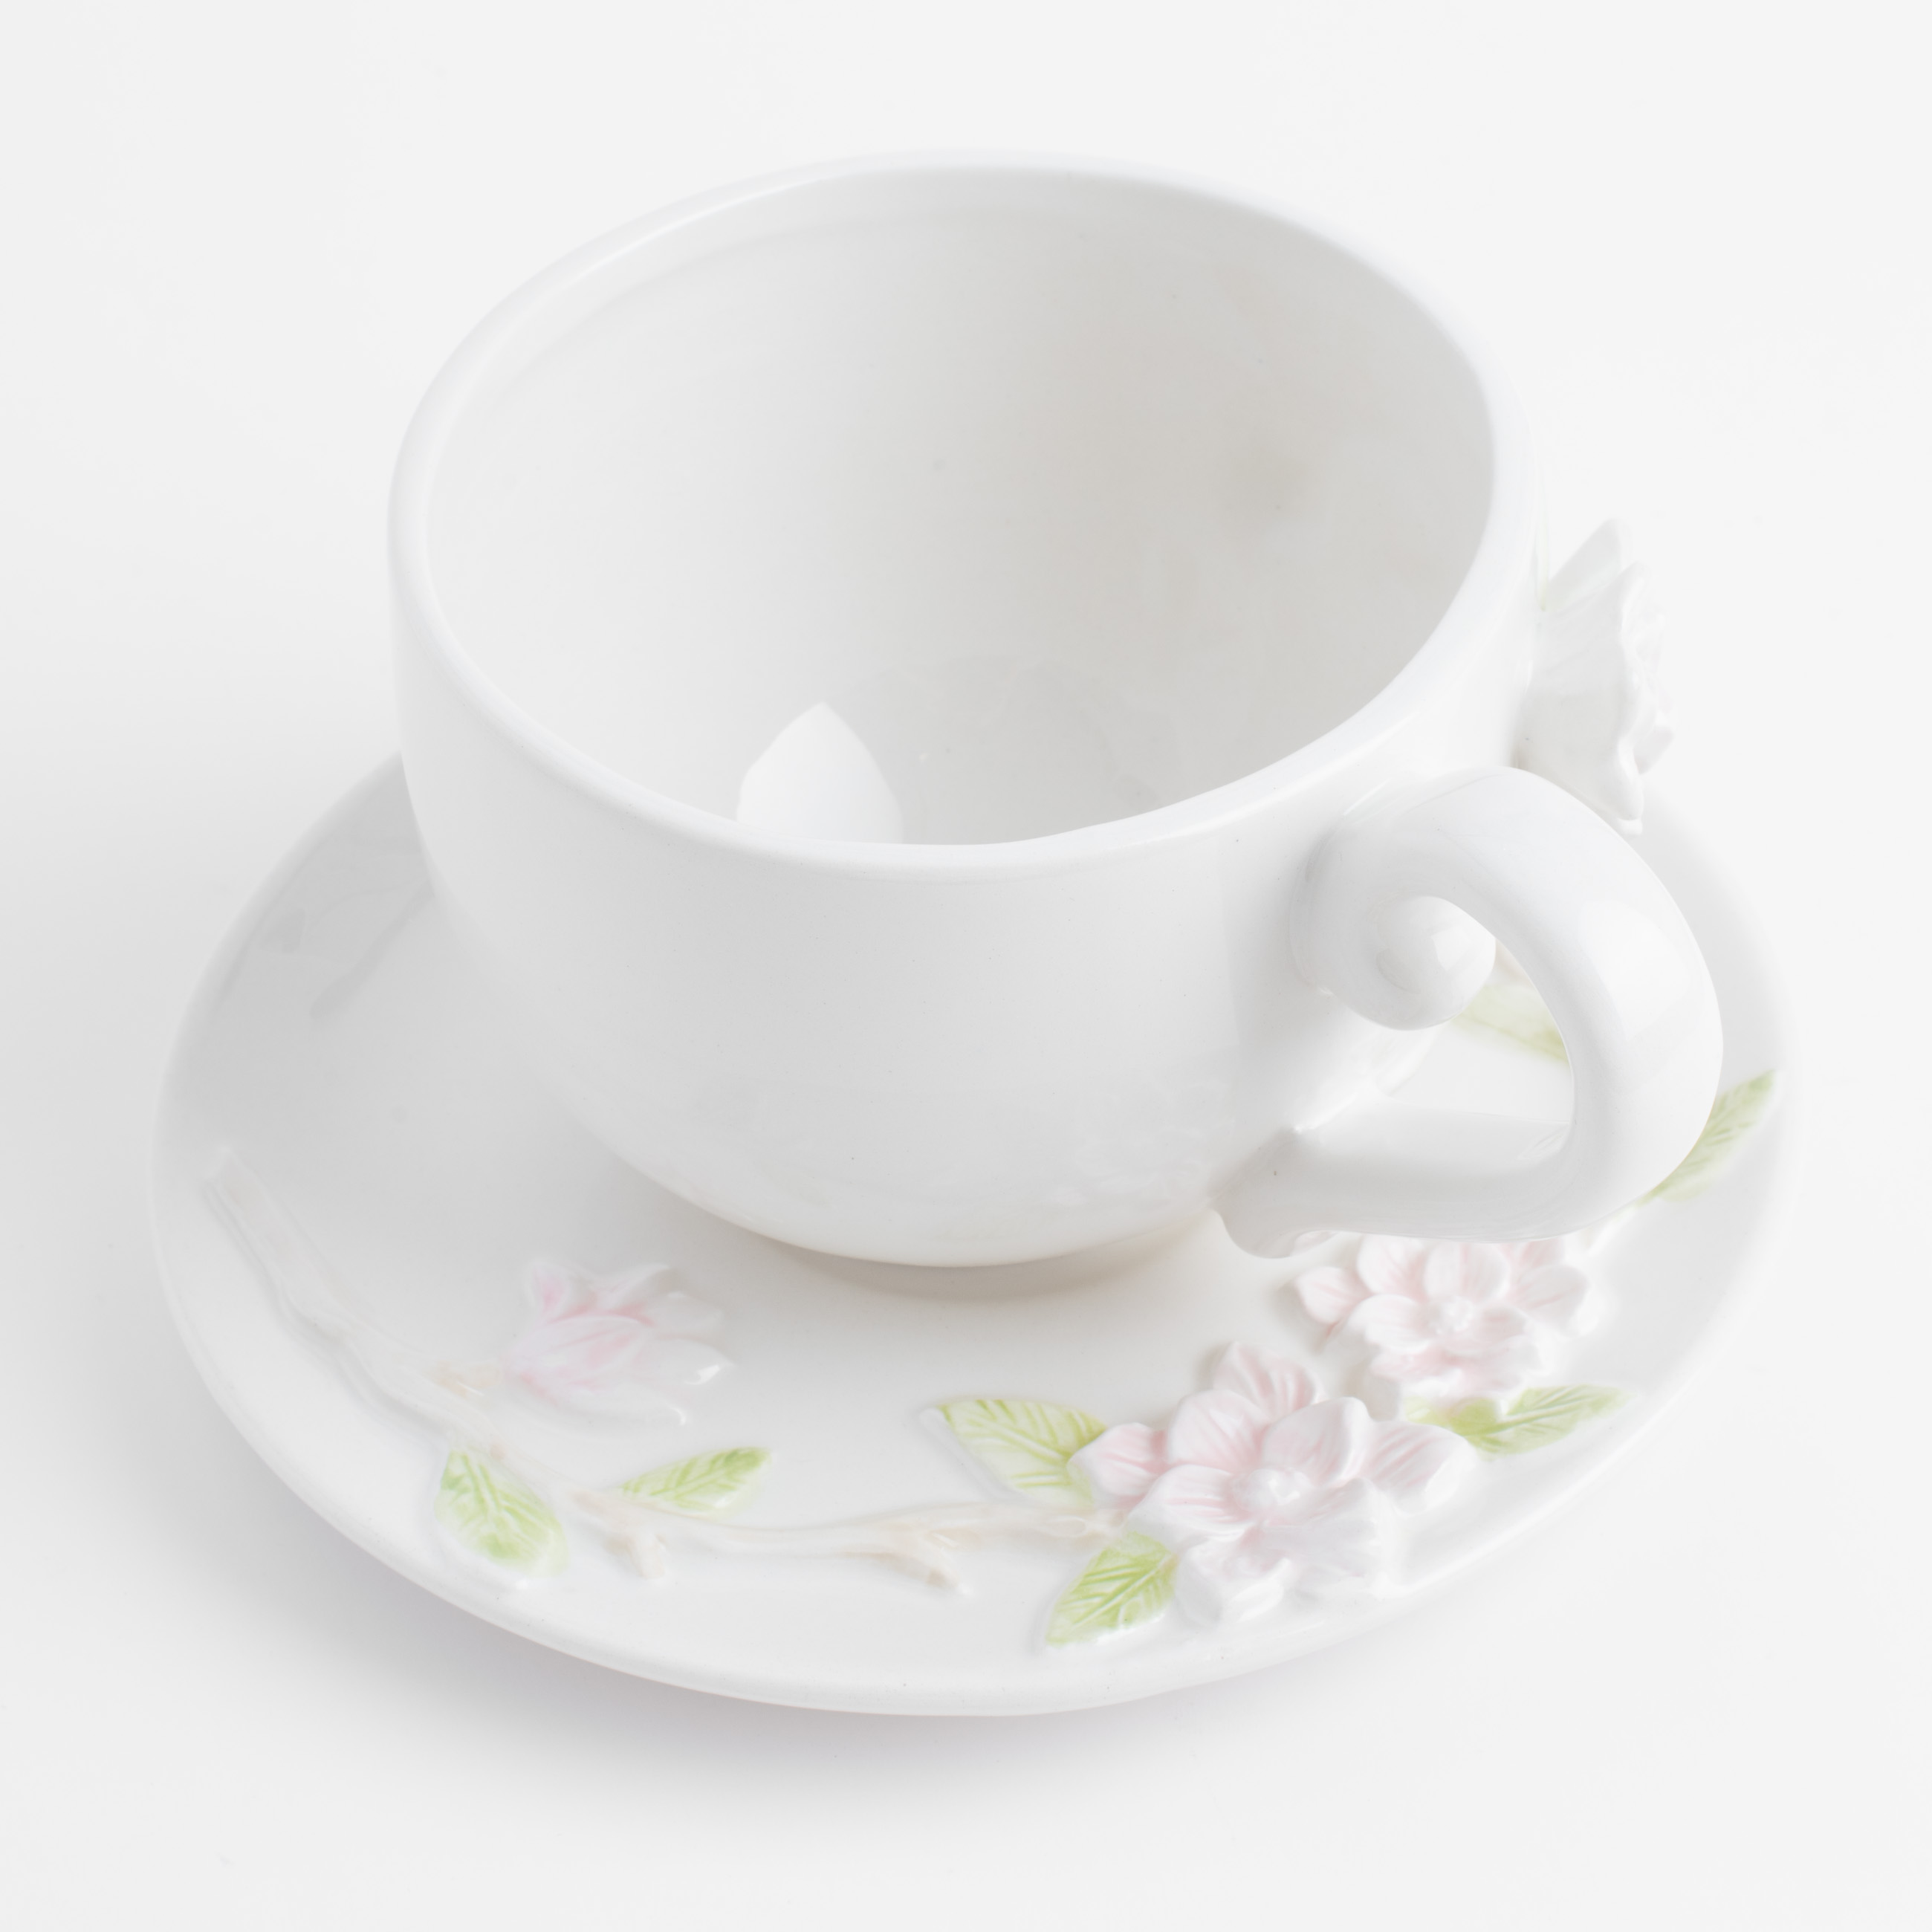 Пара чайная для завтрака, 1 перс, 2 пр, 420 мл, керамика, молочная, Цветы магнолии, Magnolia изображение № 4